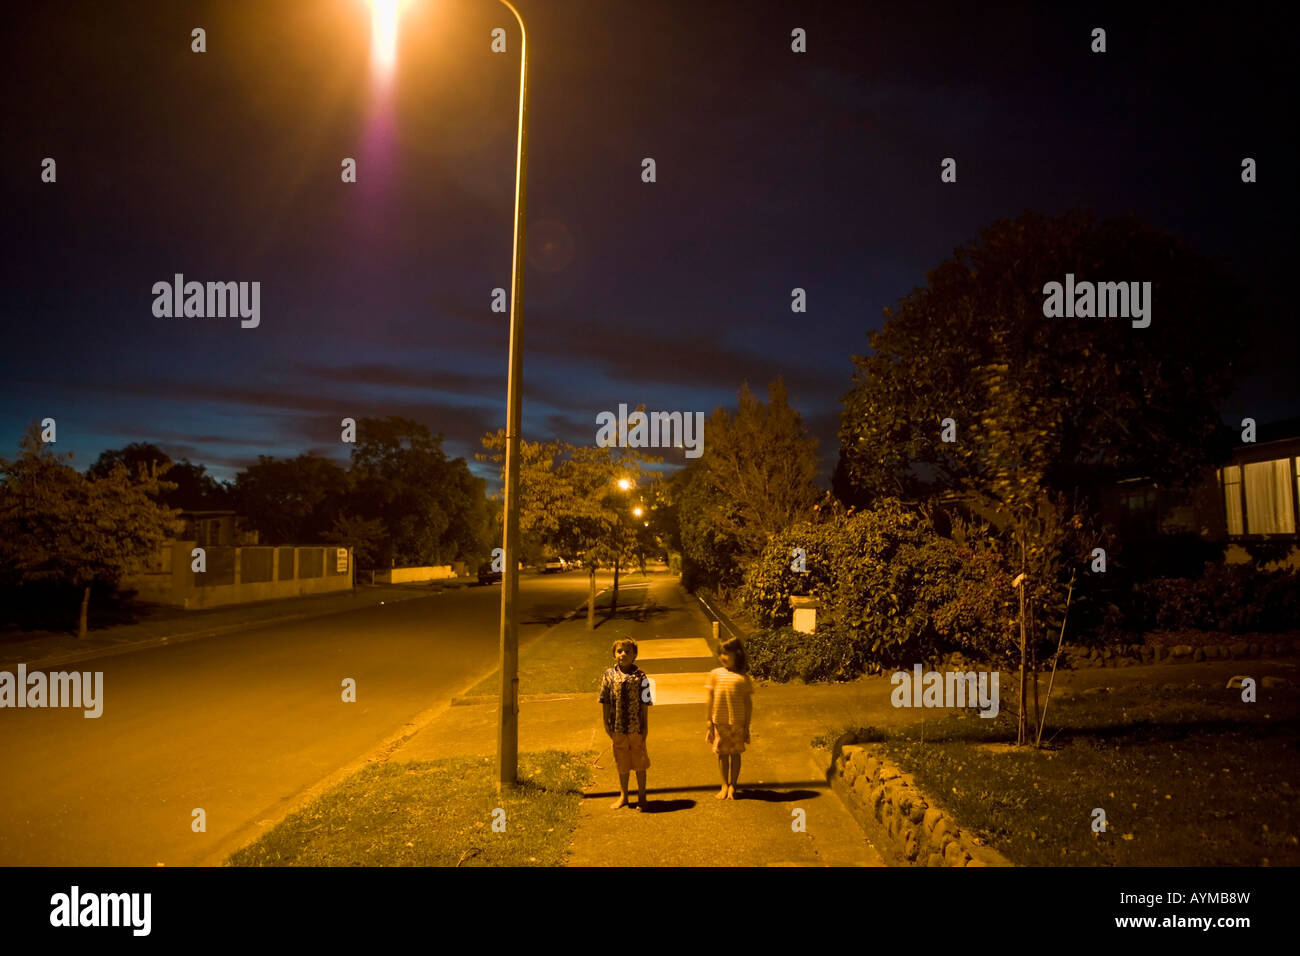 Bruder im Alter von sechs und Schwester im Alter von vier Stand unter Straßenlaterne auf einer öffentlichen Straße in Palmerston North New Zealand Stockfoto